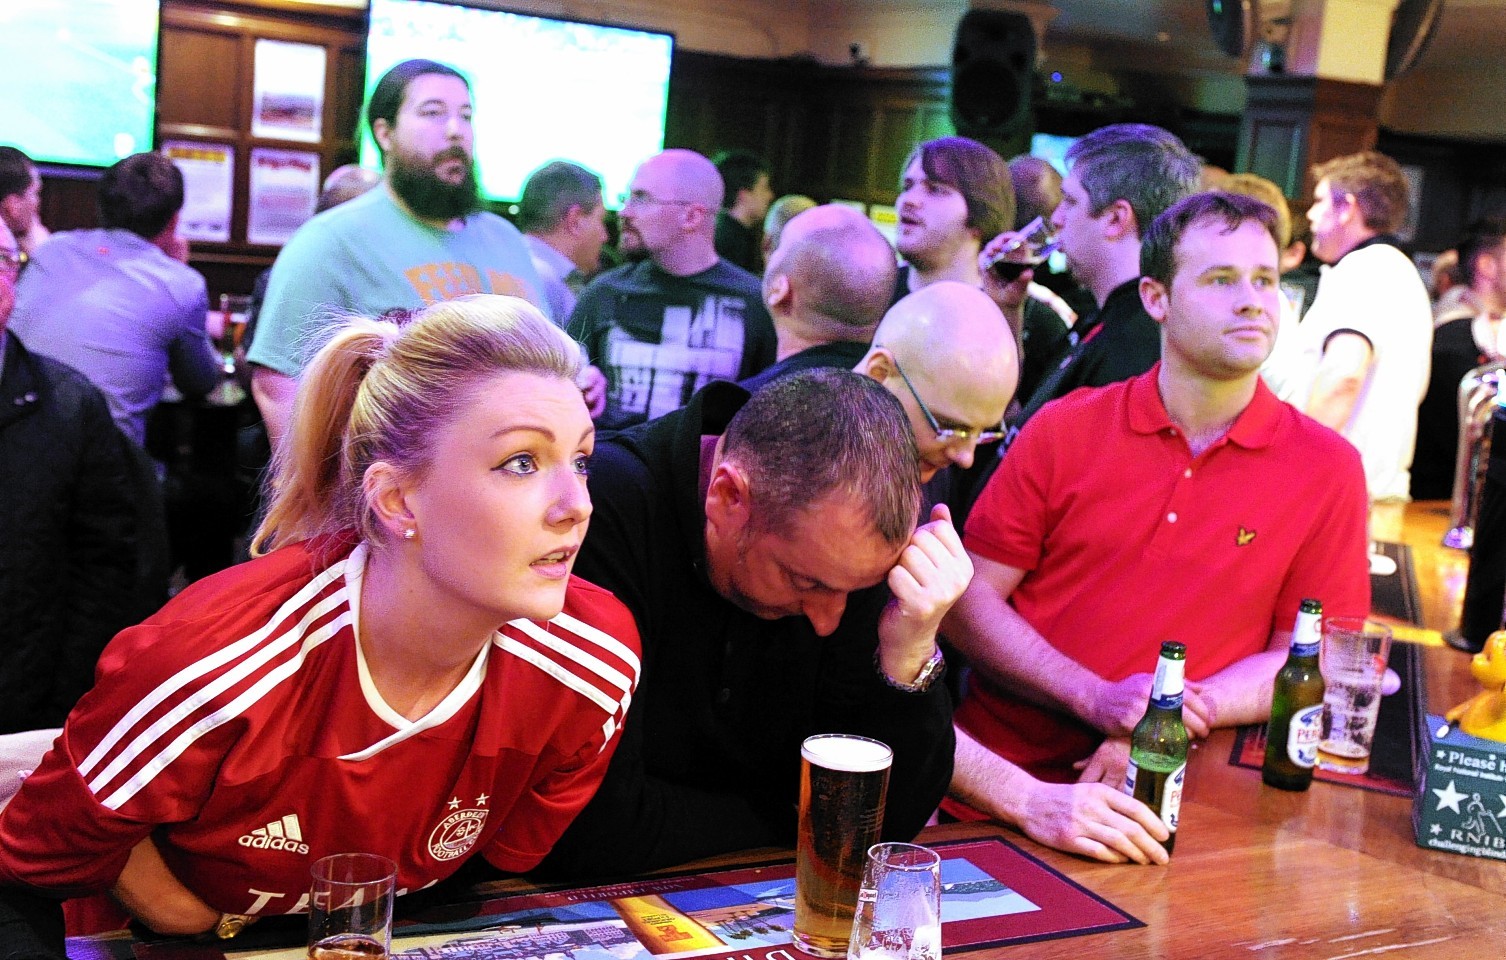 Aberdeen fans in teh pub